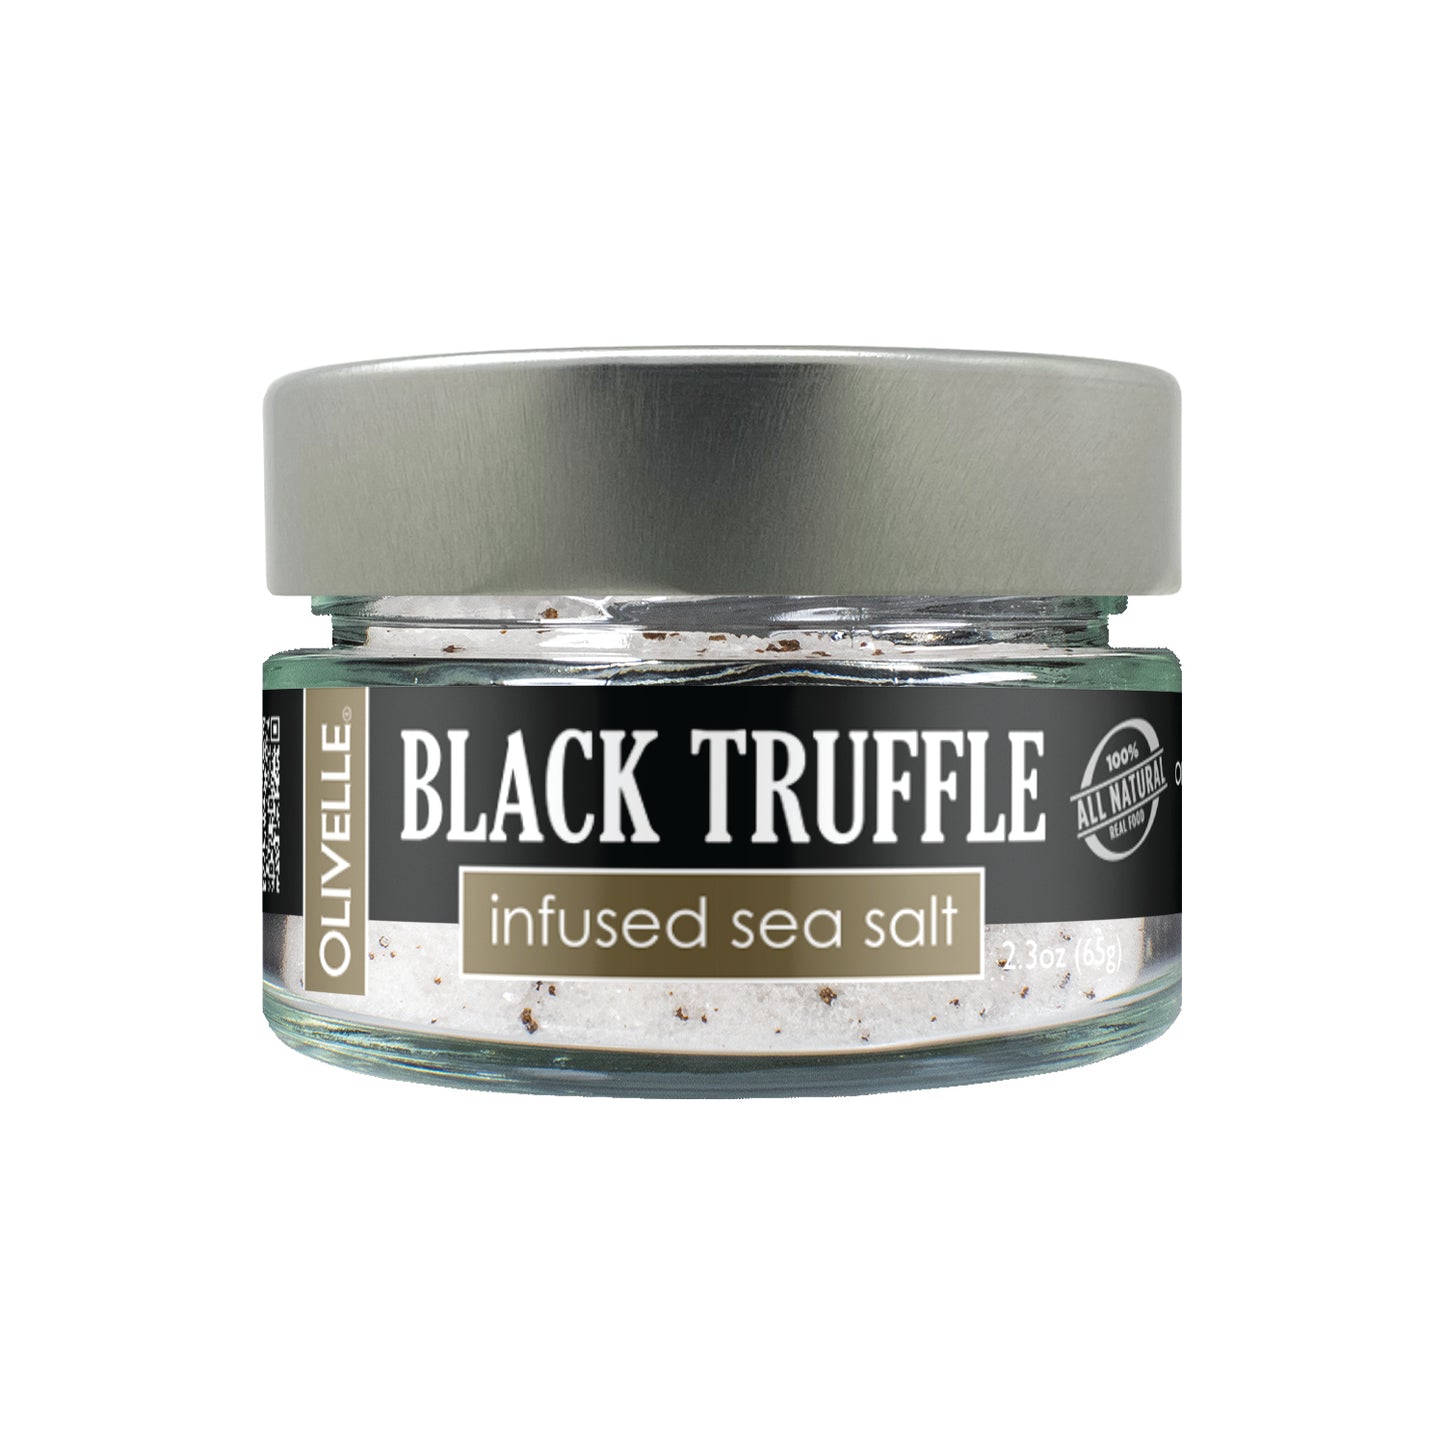 Black truffle infused sea salt